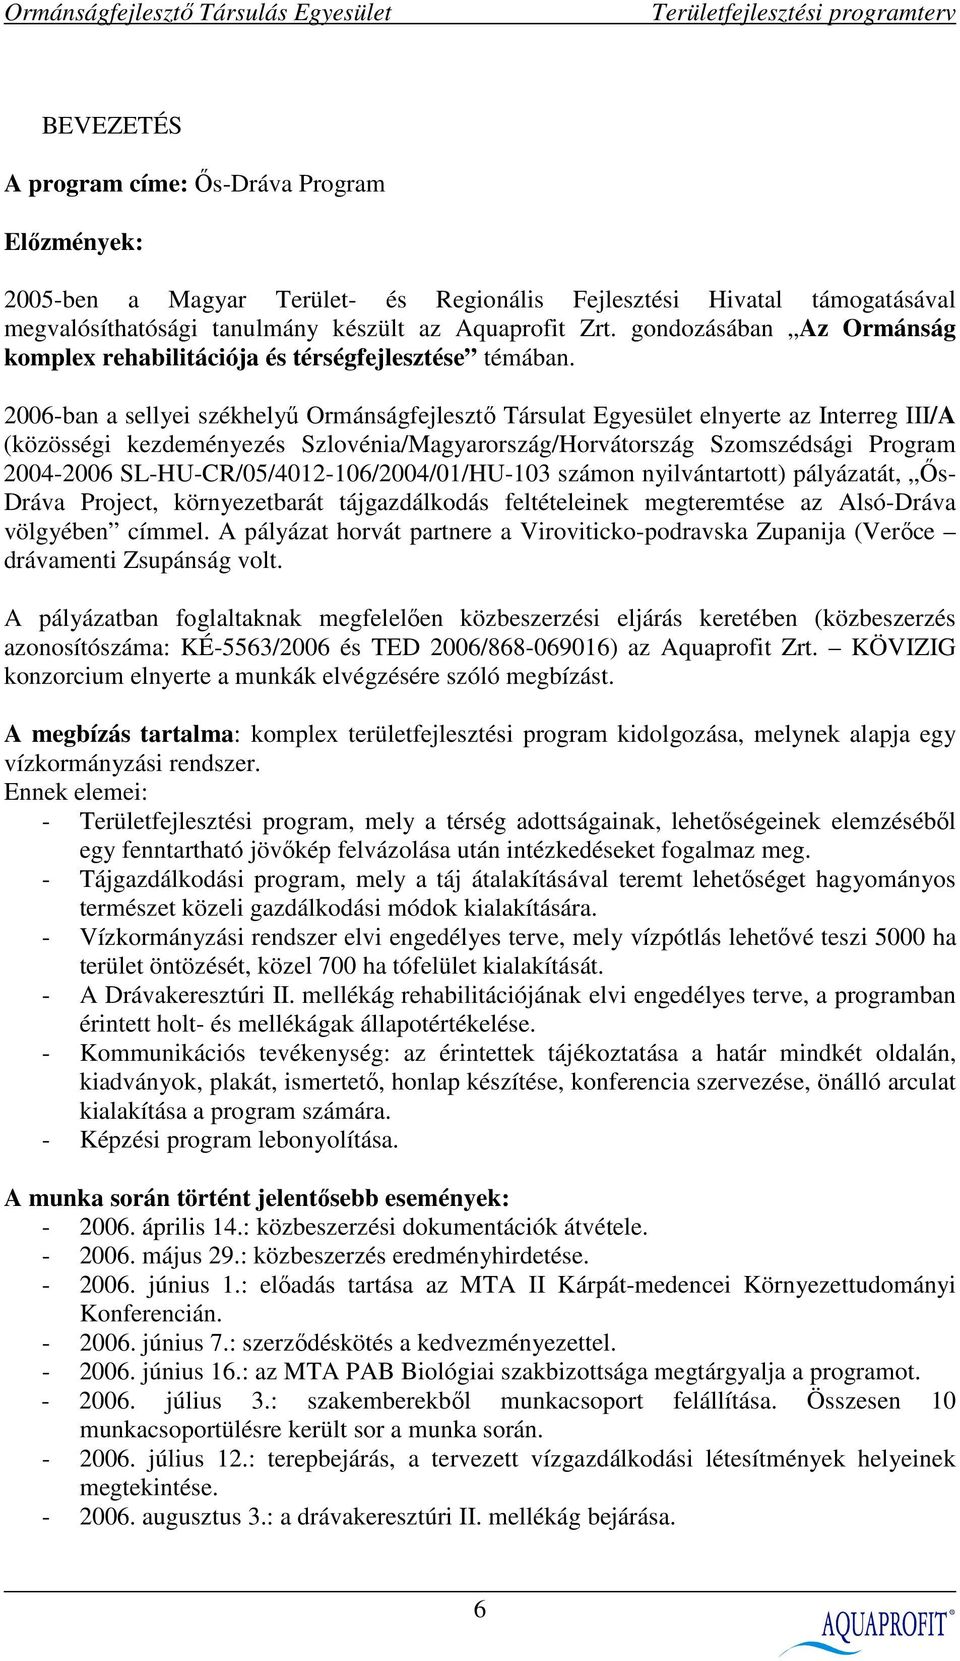 2006-ban a sellyei székhelyő Ormánságfejlesztı Társulat Egyesület elnyerte az Interreg III/A (közösségi kezdeményezés Szlovénia/Magyarország/Horvátország Szomszédsági Program 2004-2006